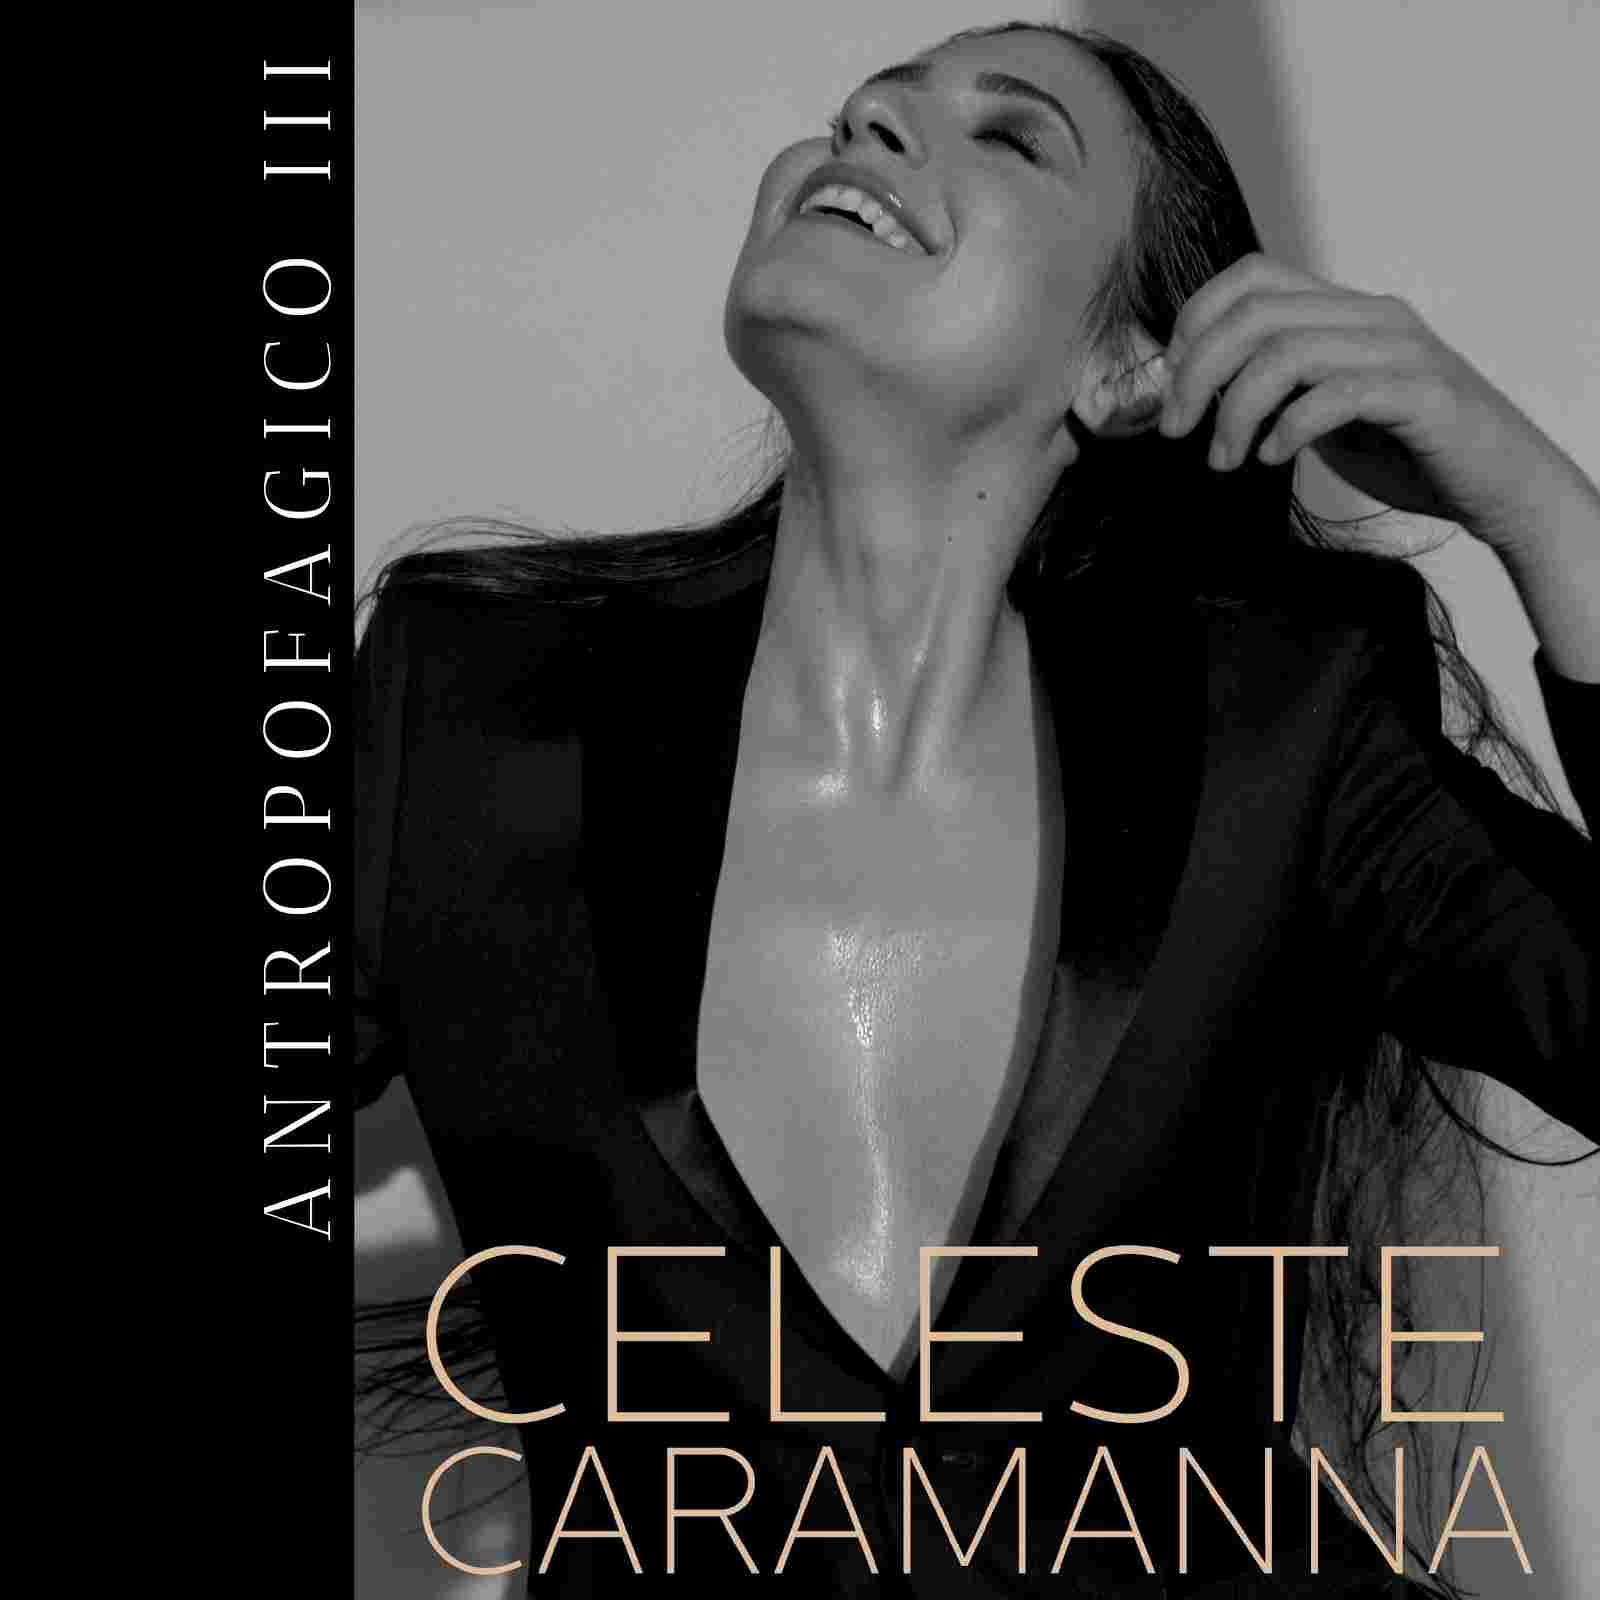 Celeste Caramanna “Antropofagico III” è il terzo Ep del trittico “Antropofagico” della cantautrice italiana, londinese d’adozione